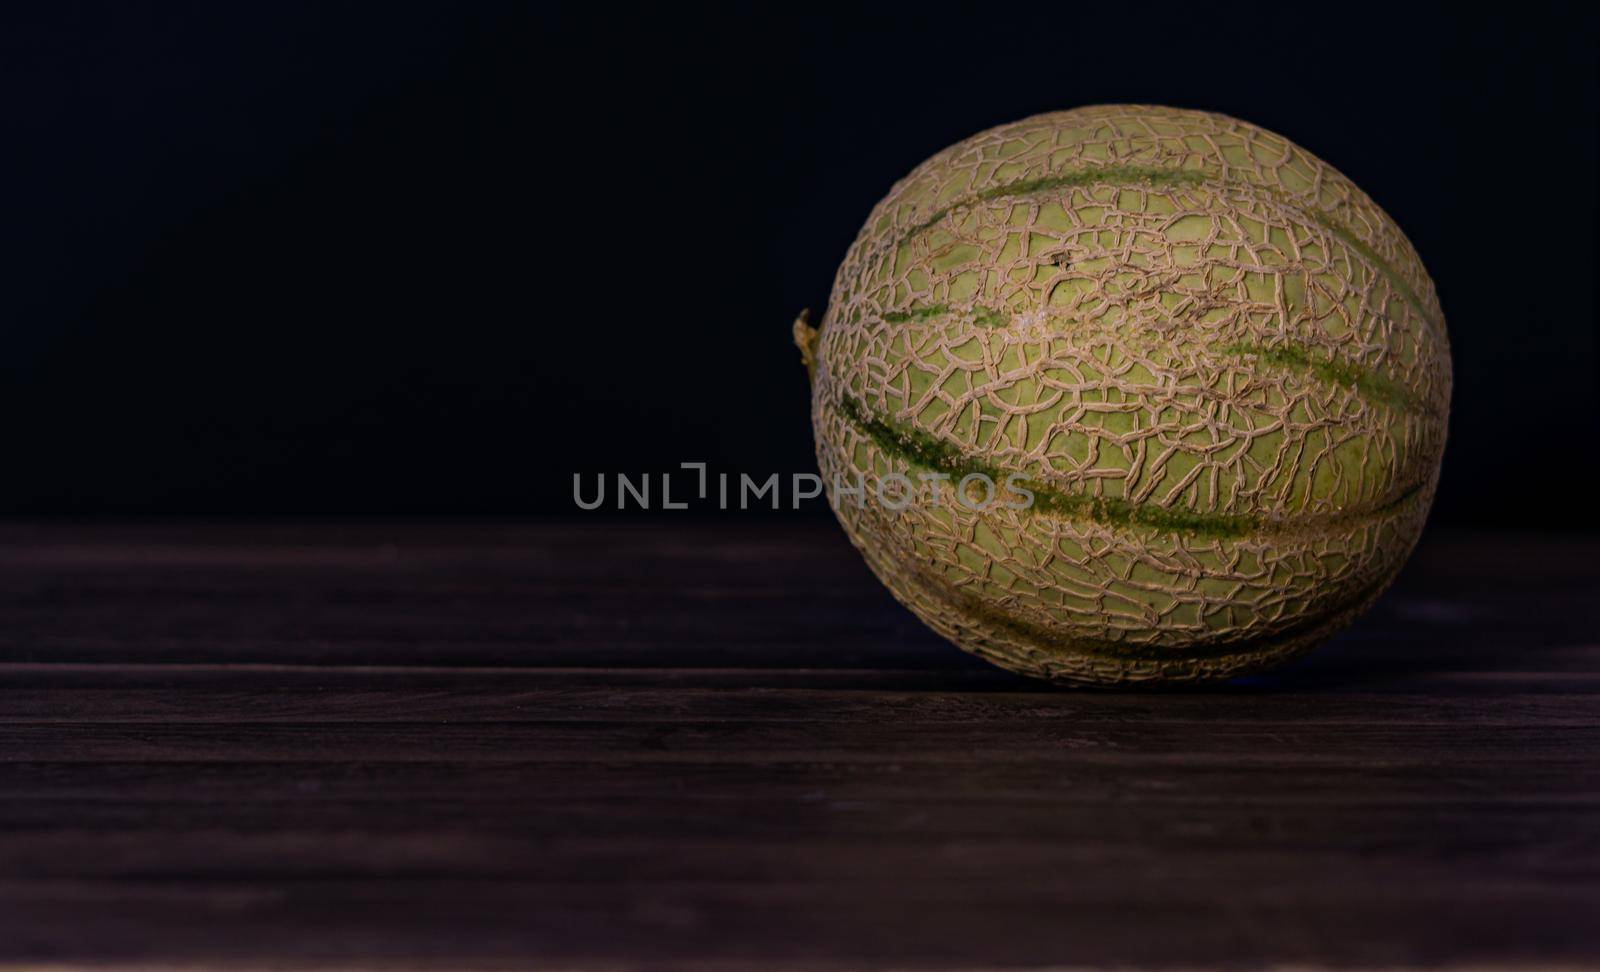 cantaloupe melon by joseantona